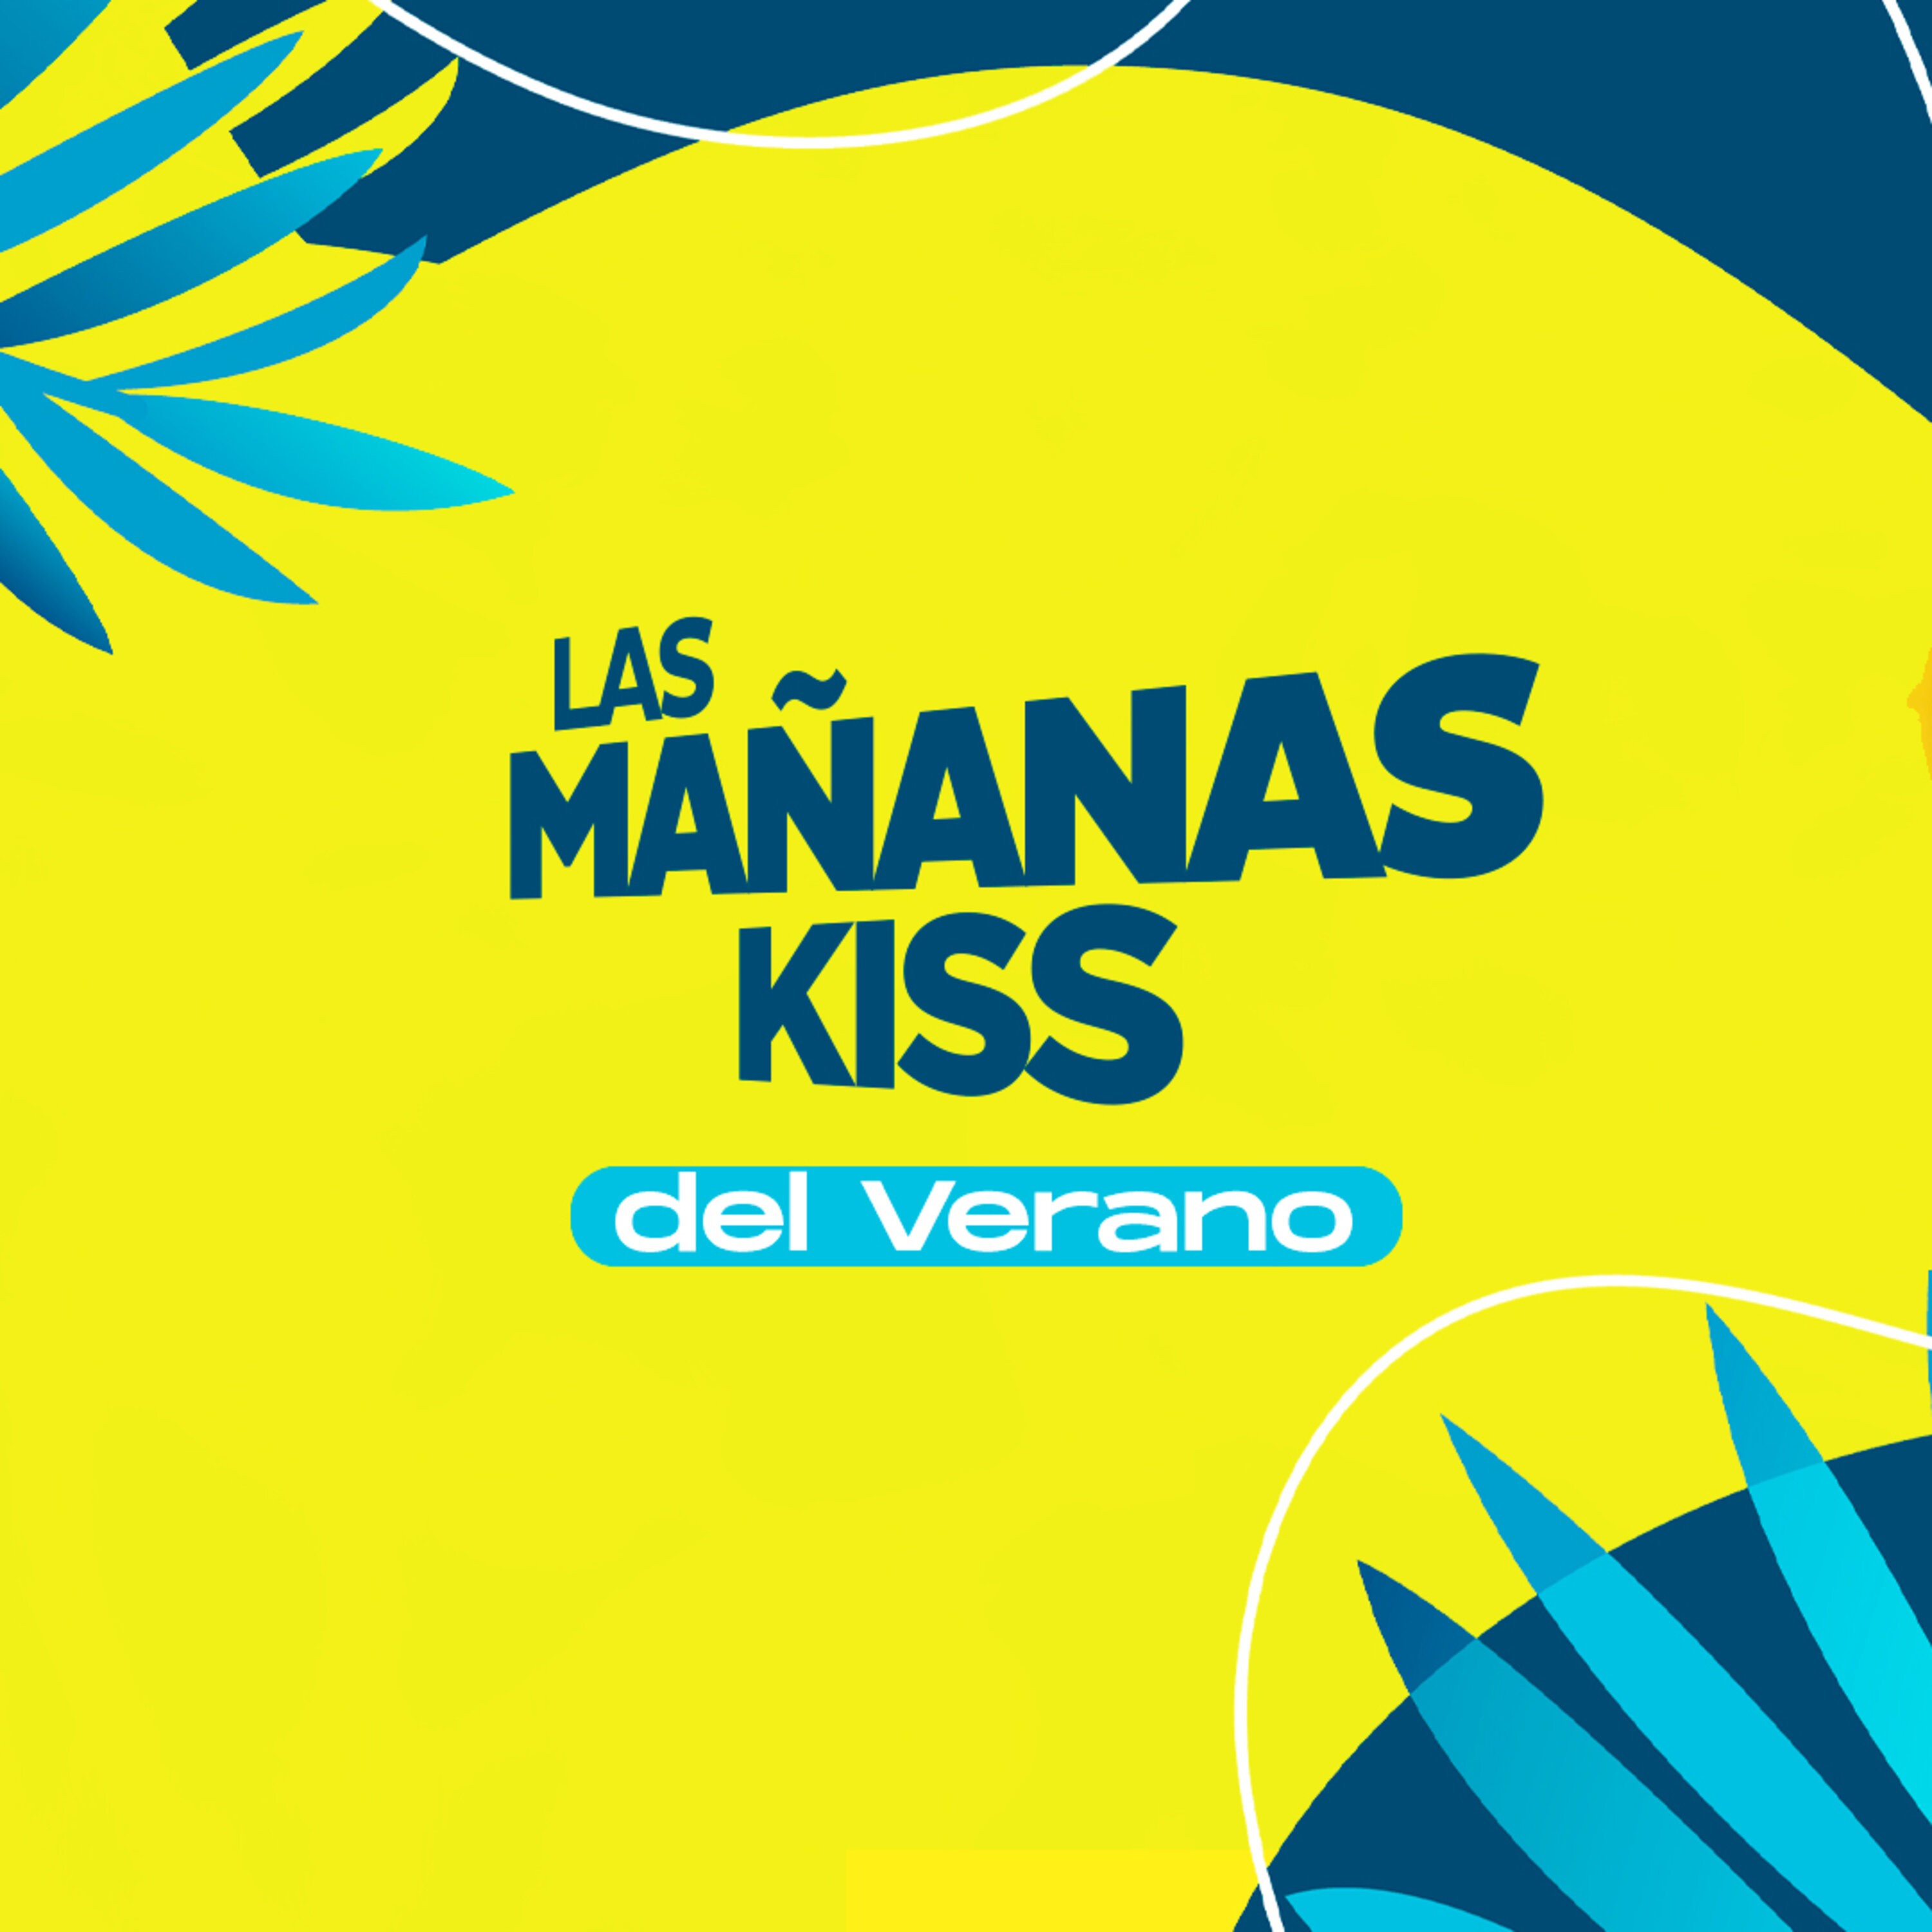 Las Mañanas KISS del Verano (05/08/2022 - 08-09h)